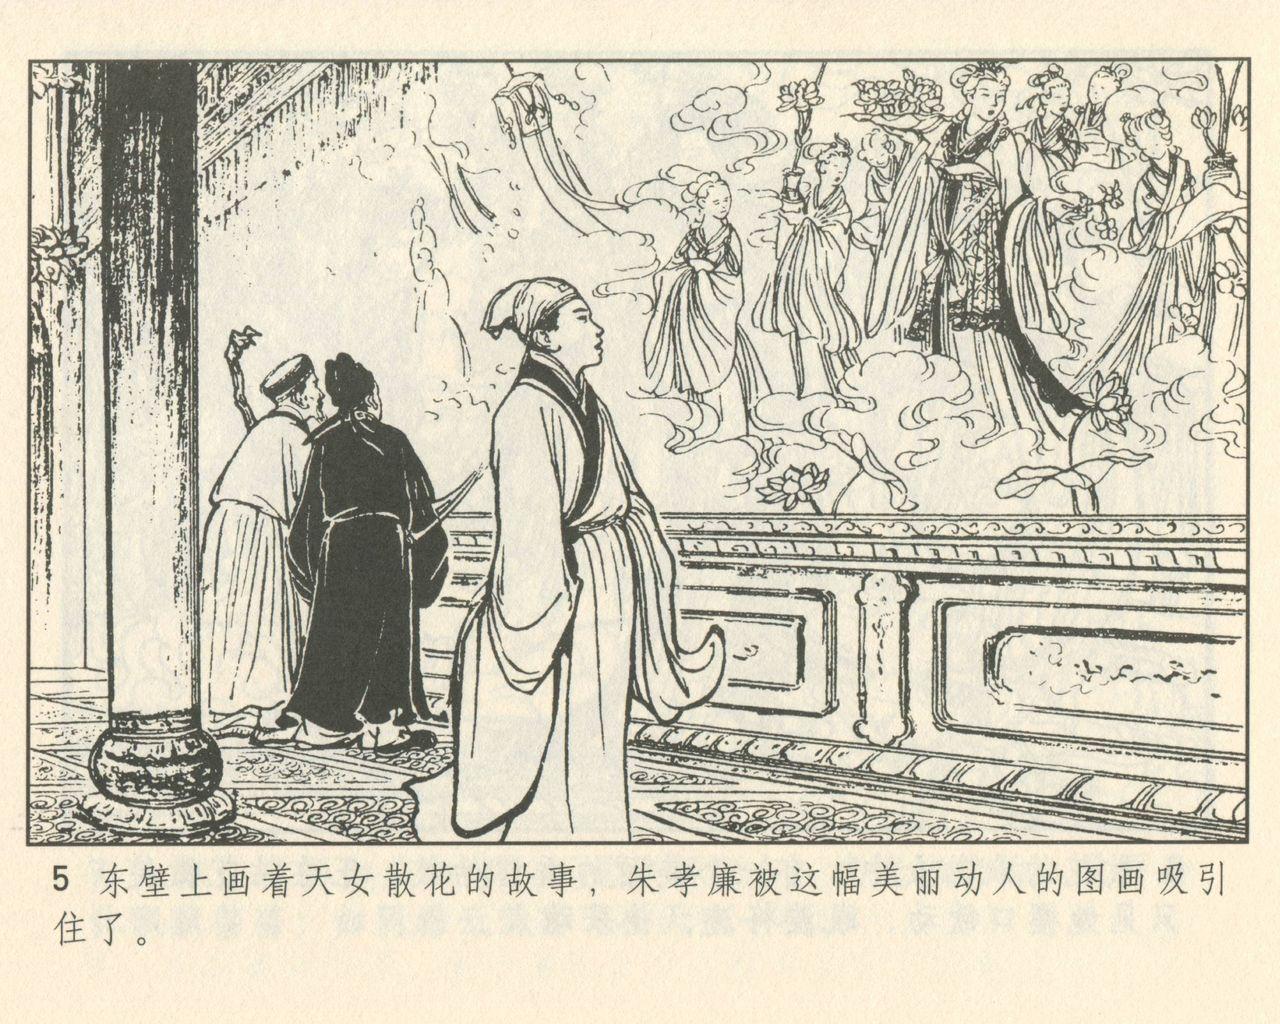 聊斋志异 张玮等绘 天津人民美术出版社 卷二十一 ~ 三十 8